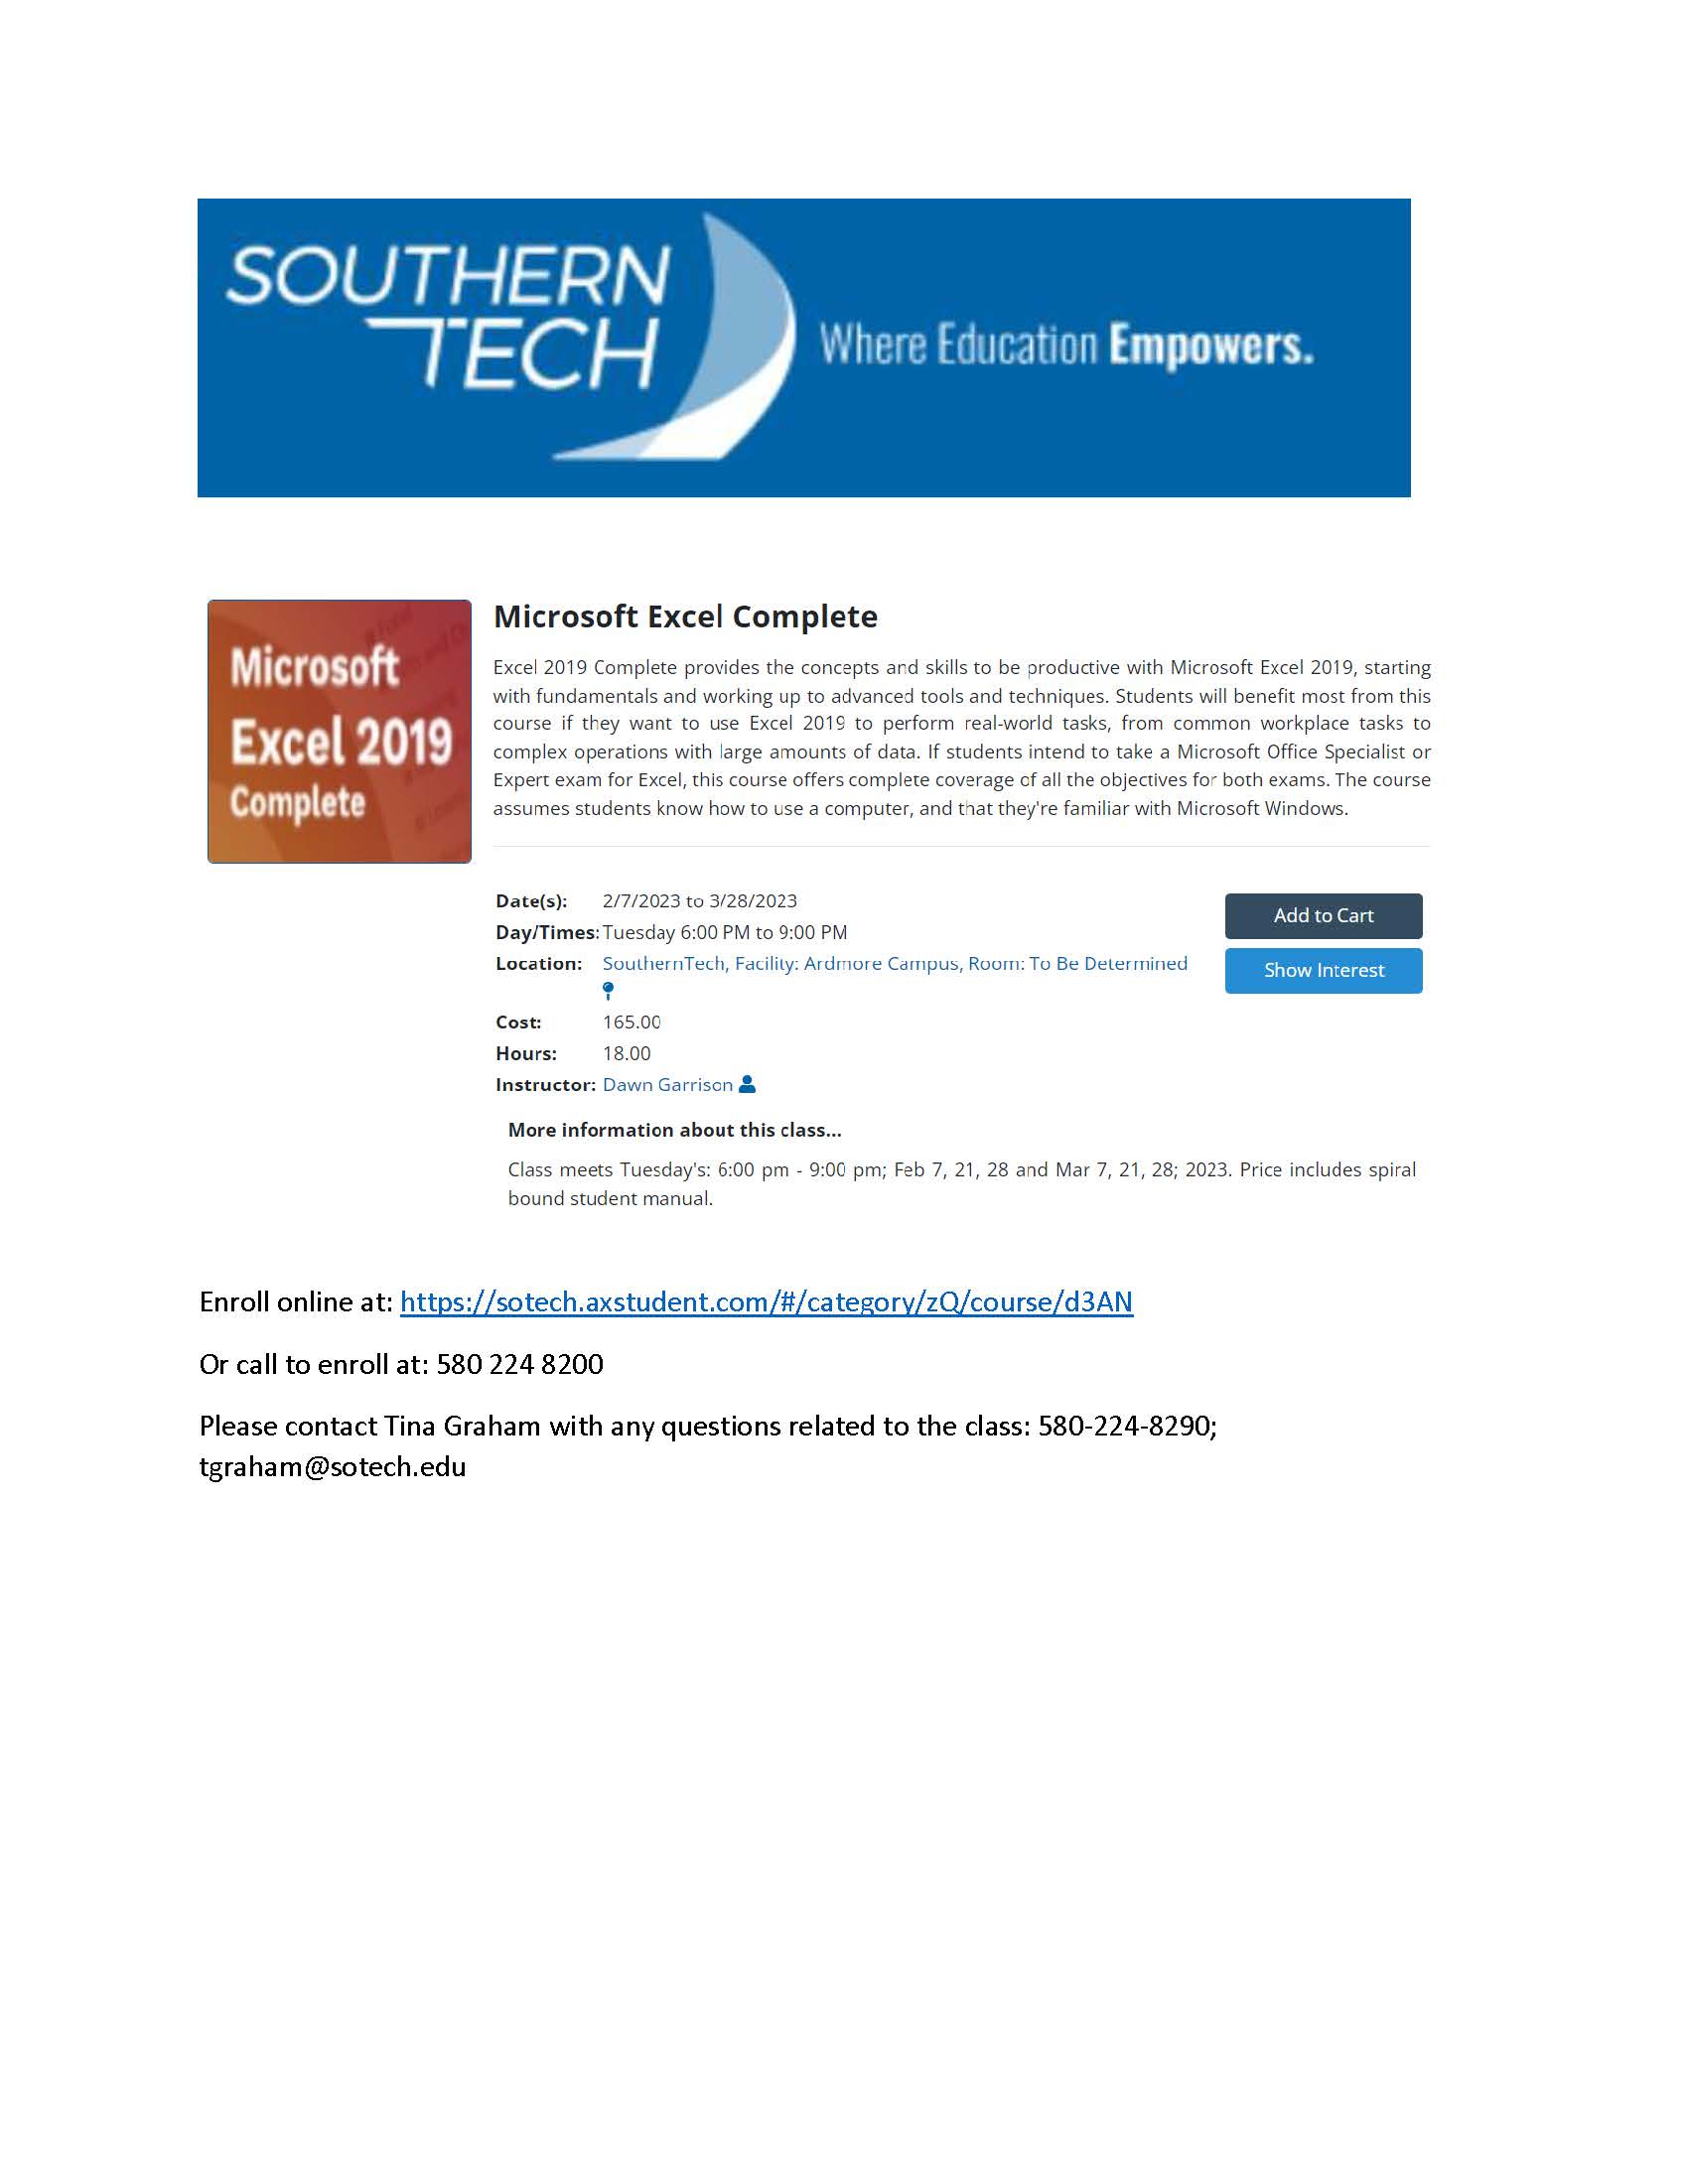 Southern Tech Flyer